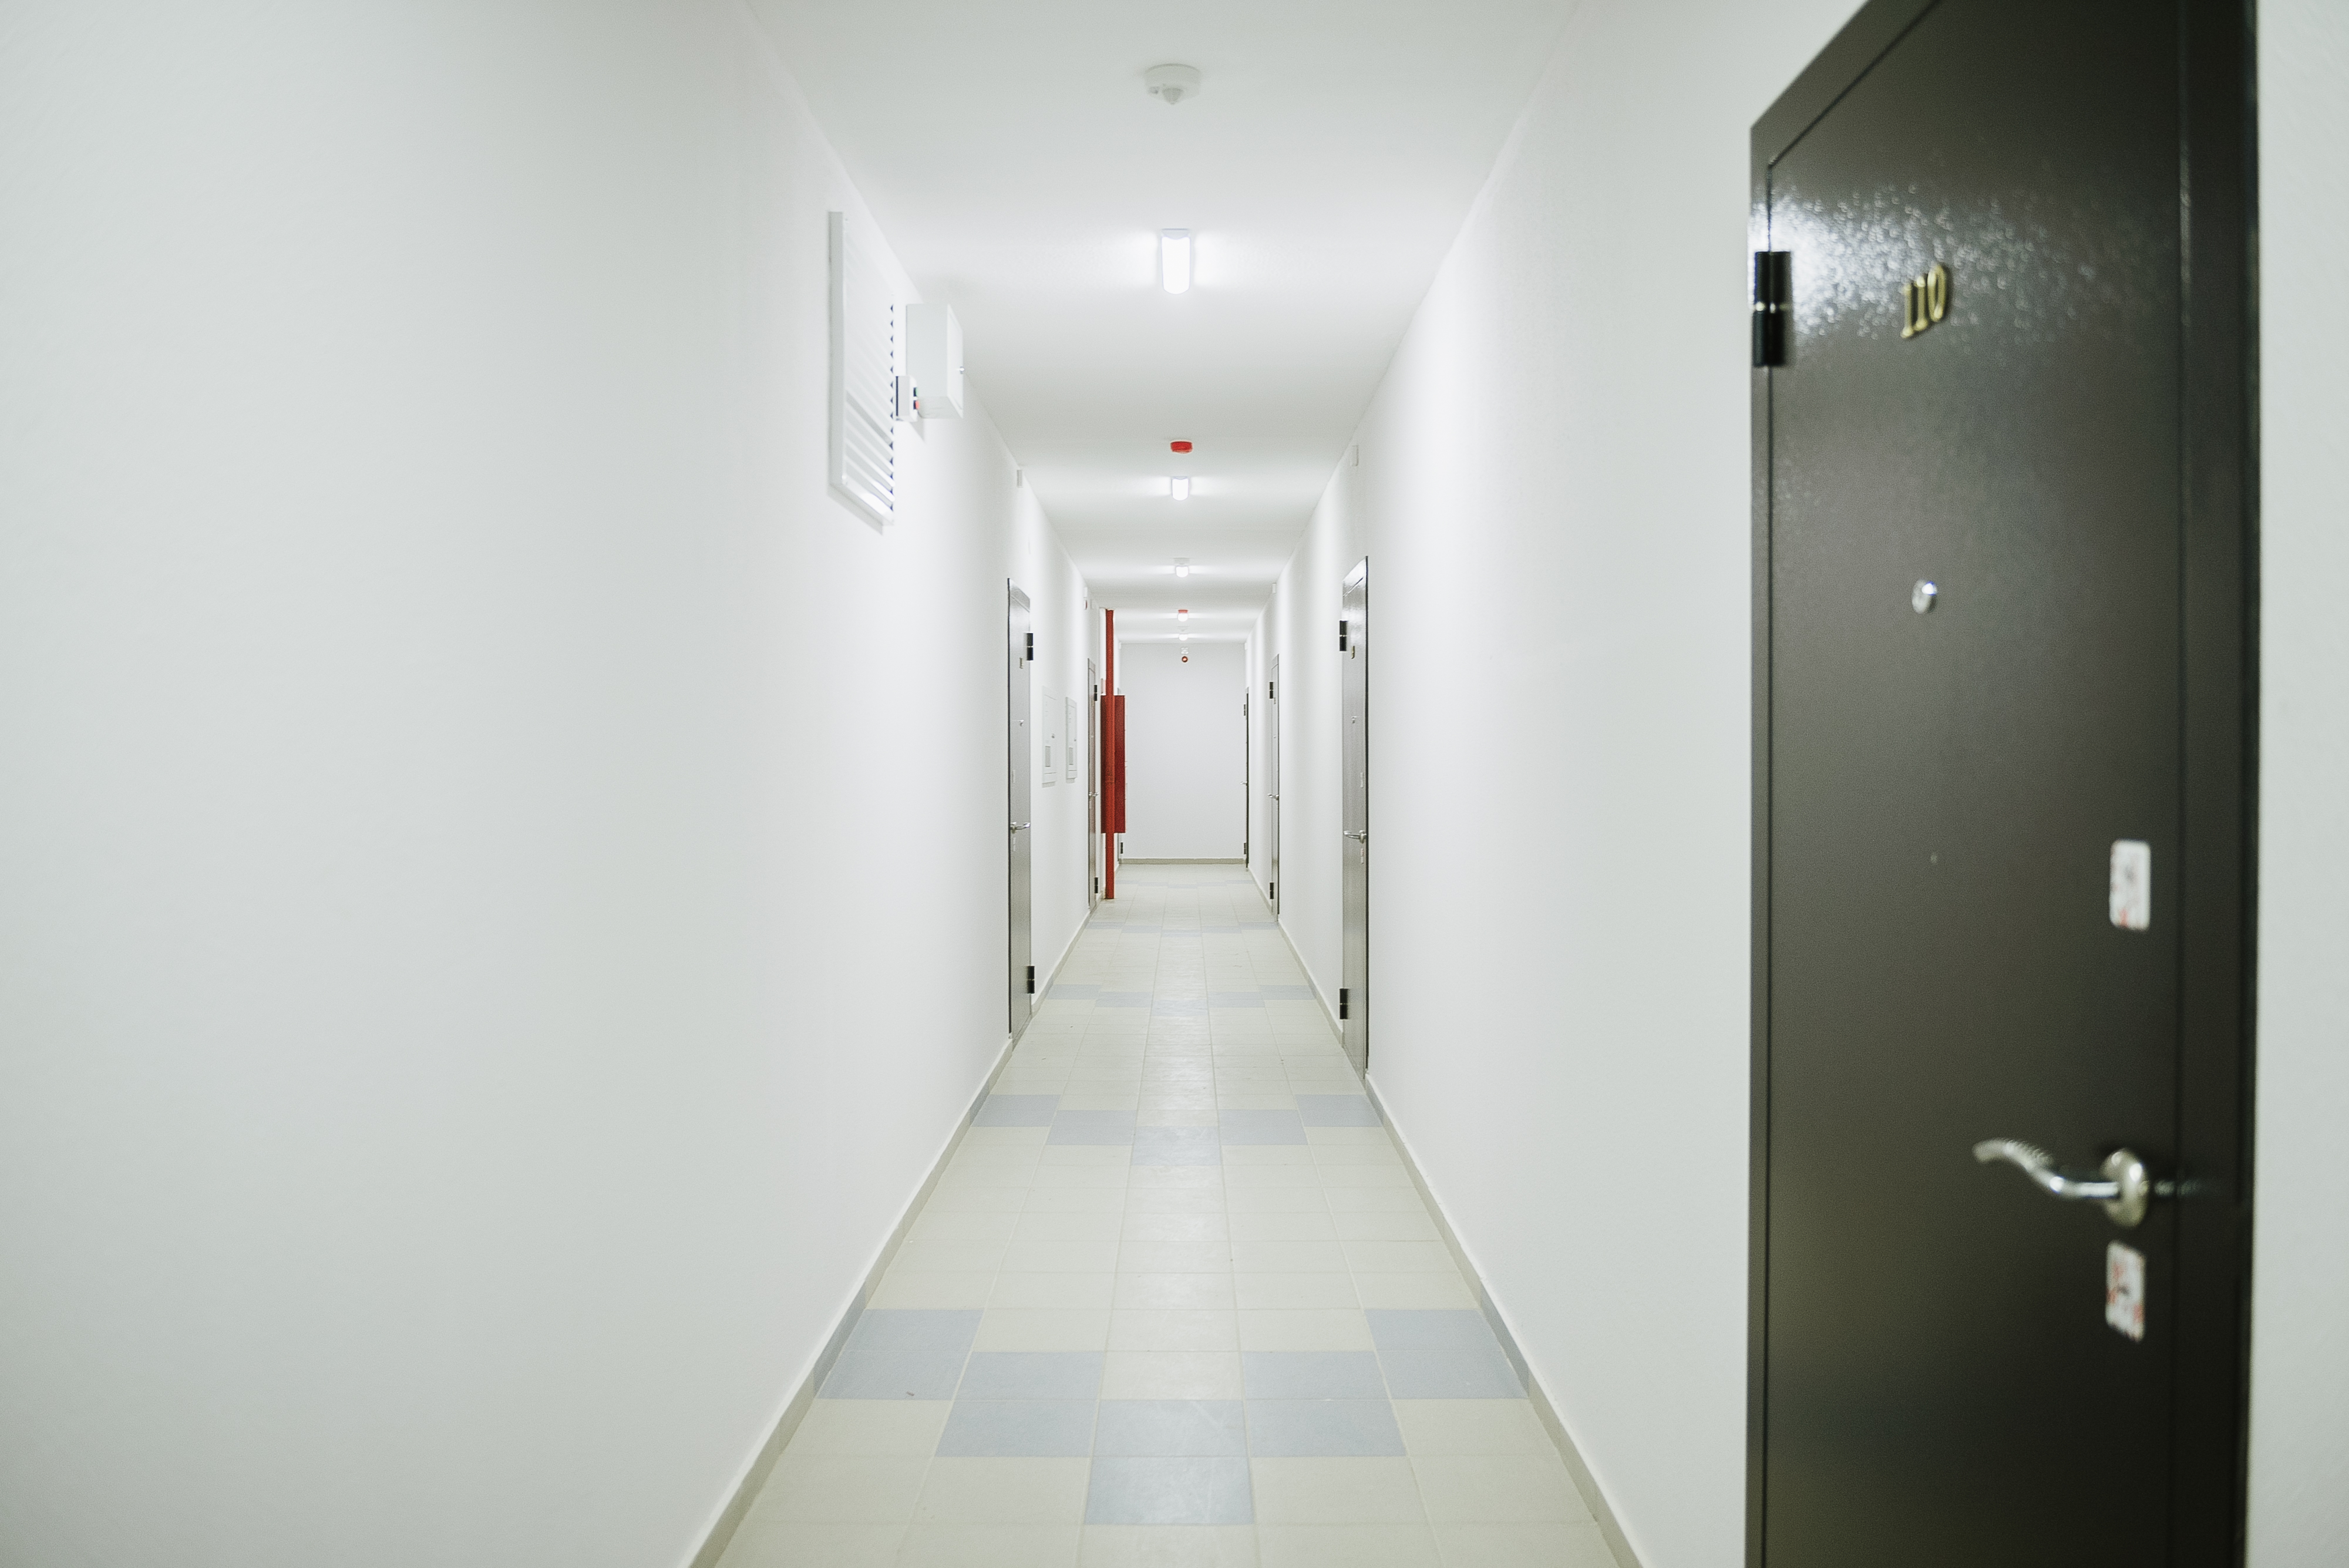 Не допускается размещать встроенные шкафы в коридорах на путях эвакуации